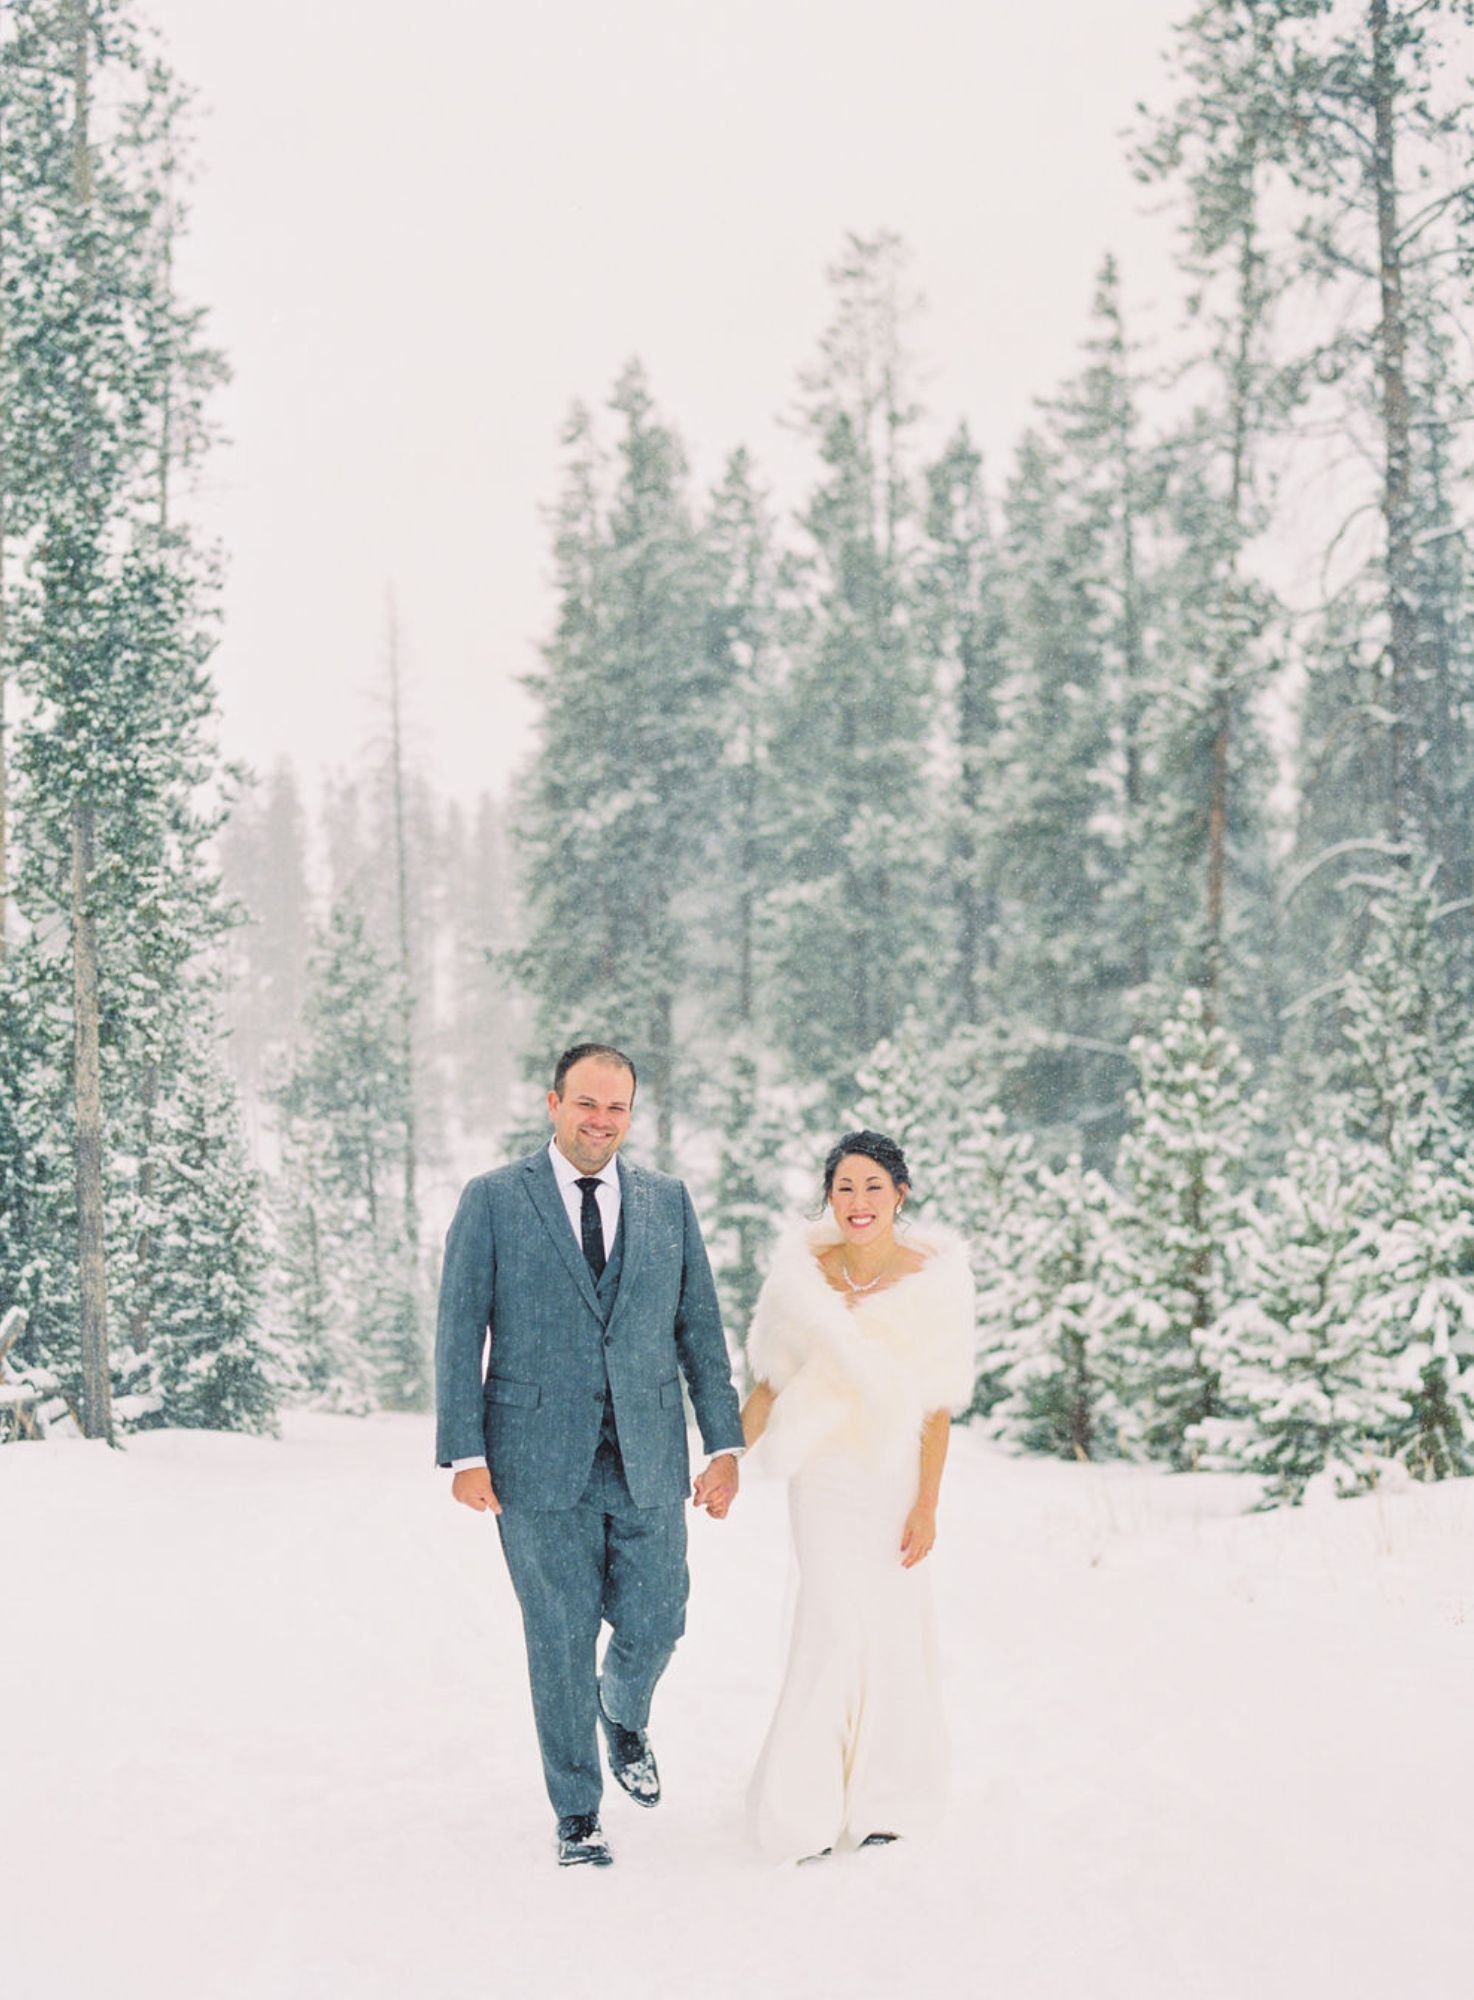 Winter Wedding in Colorado